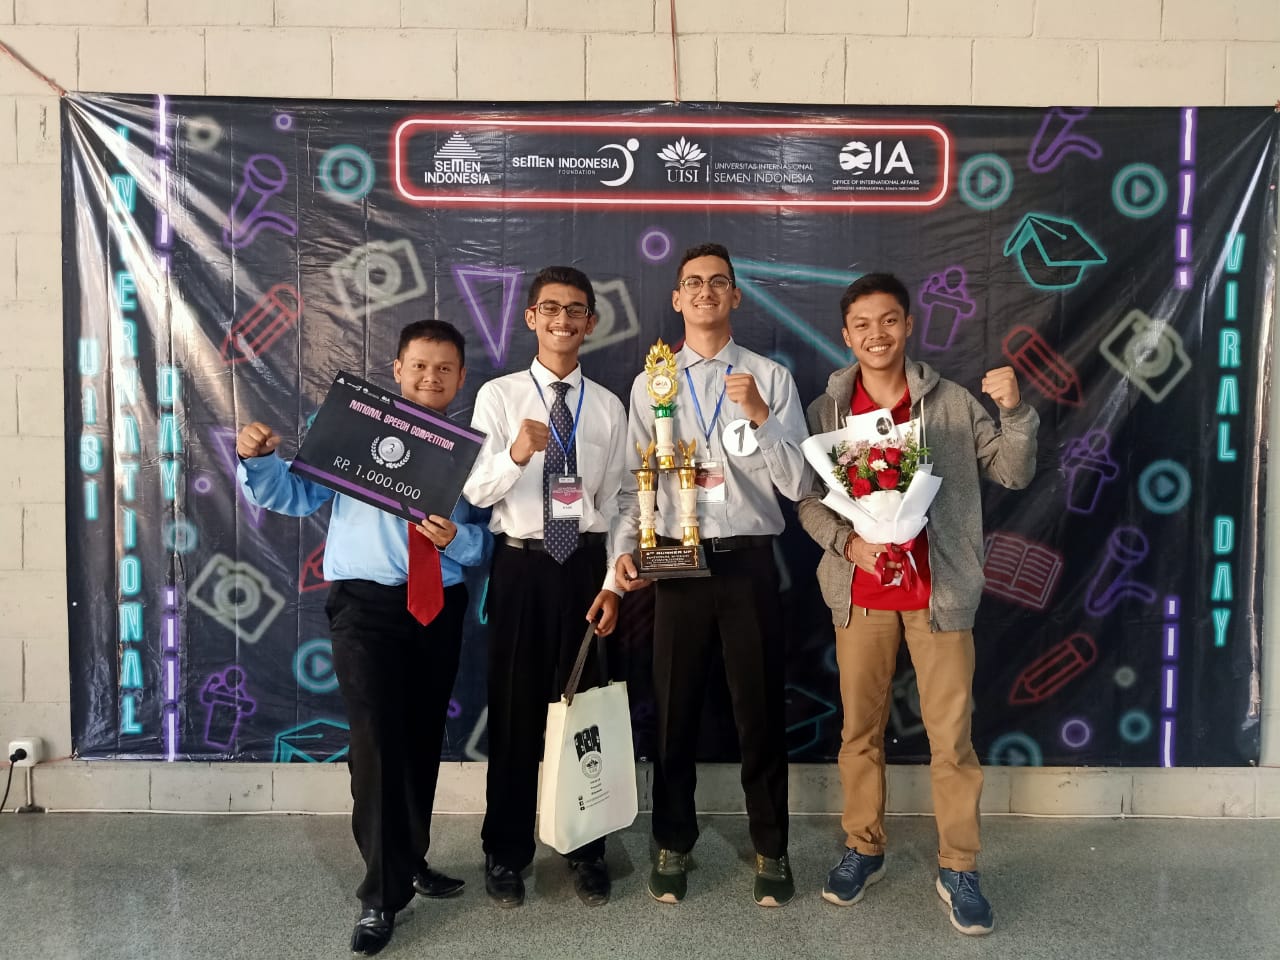 Juara-3-Pada-Kejuaraan-National-Speech-Competition-yang-diadakan-oleh-OIA-UISI